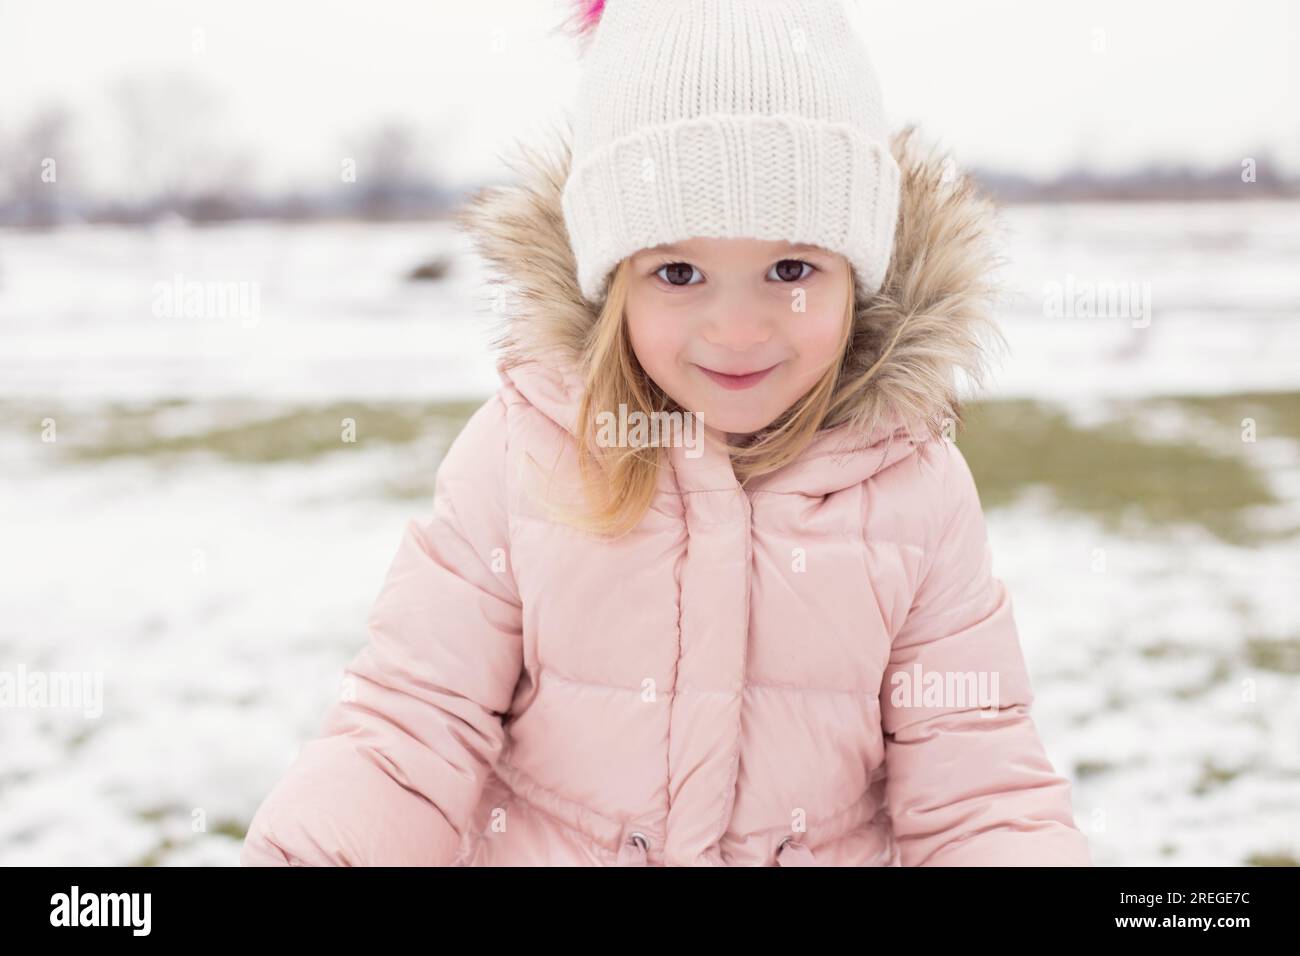 Bambino con occhi espressivi che gioca all'aperto nella neve invernale. Foto Stock